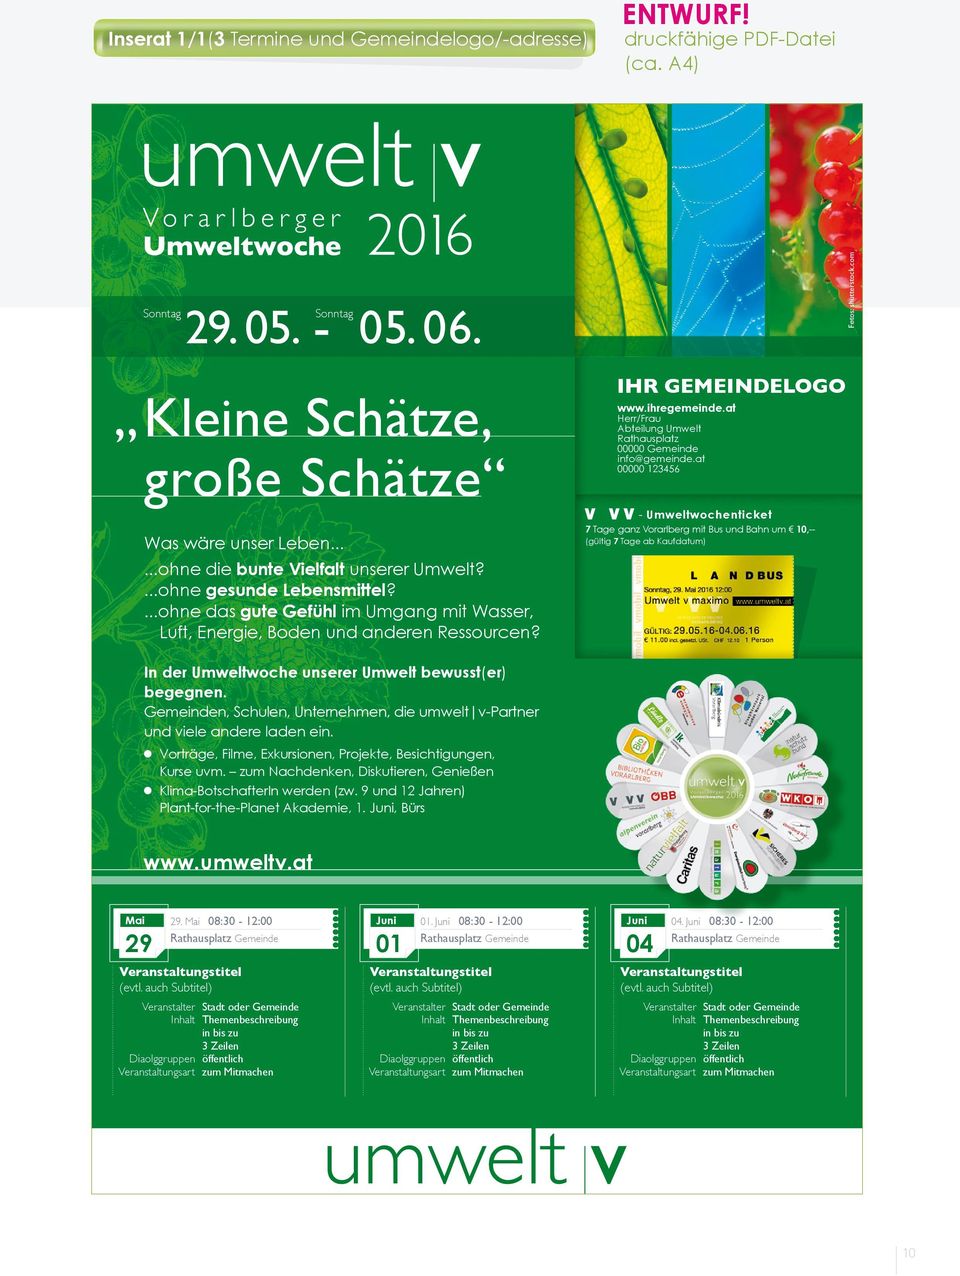 at Herr/Frau Abteilung Umwelt Rathausplatz 00000 Gemeinde info@gemeinde.